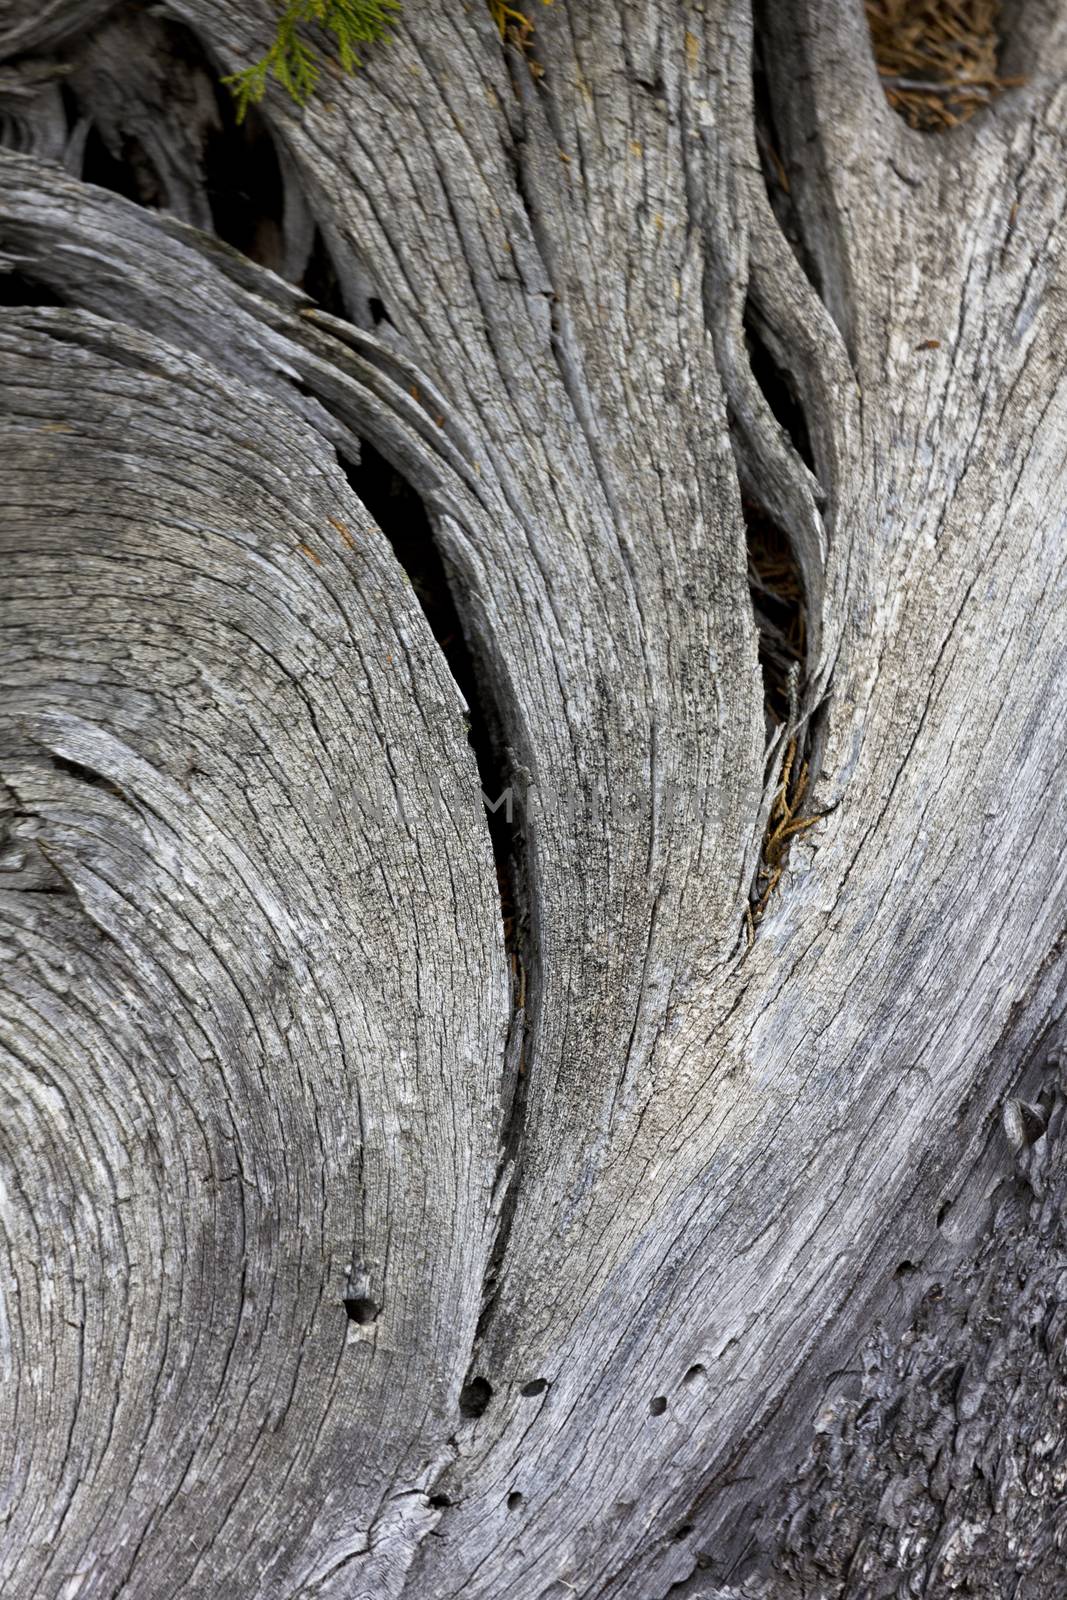 Beautiful fan of wood in Yellowstone by fmcginn